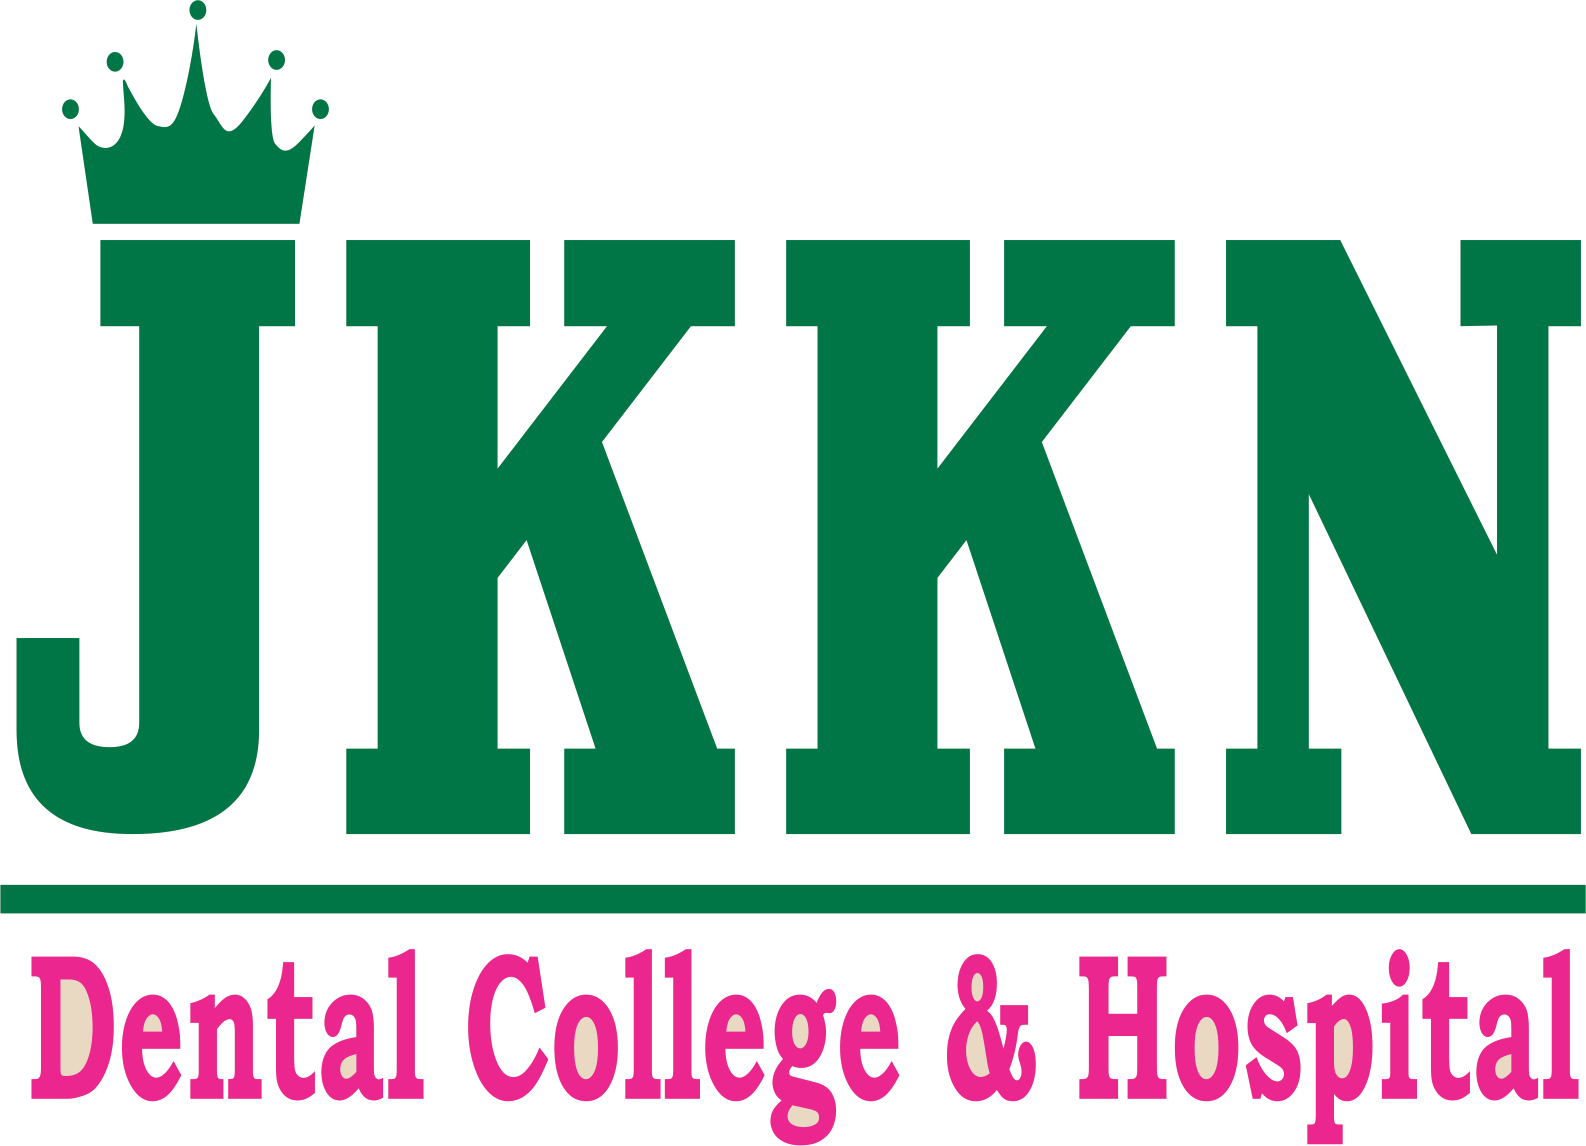 File - J - K - K - Nattraja Dental College And Hospital - Jkkn (1586x1146), Png Download